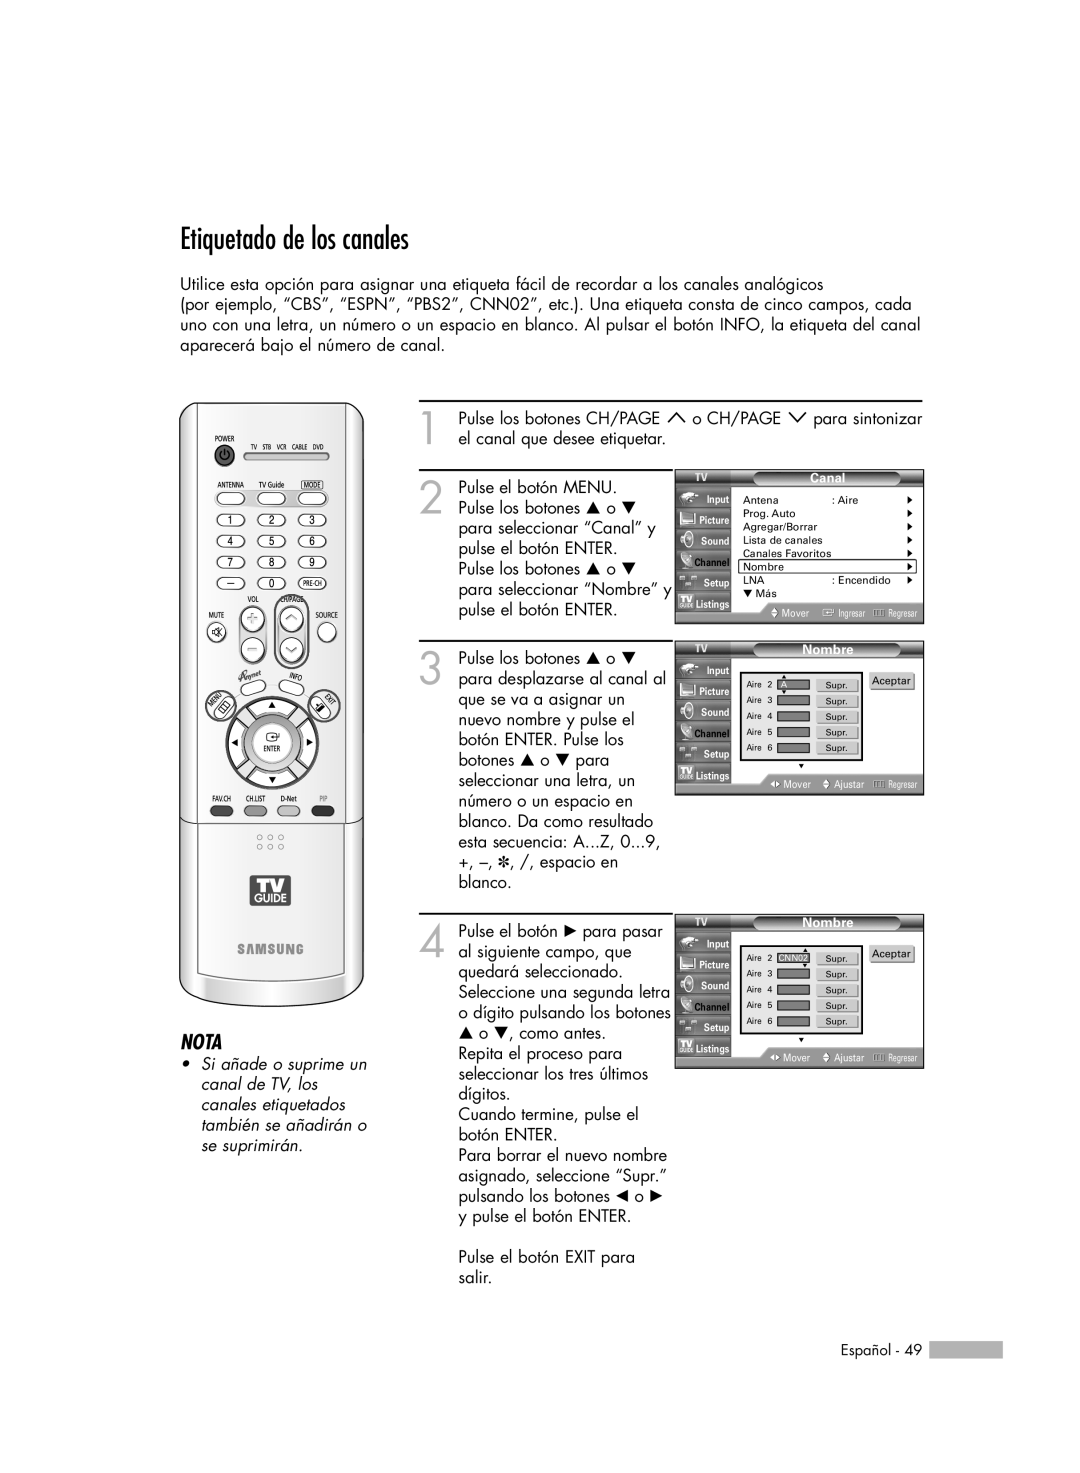 Samsung HL-R5078W, HL-R6178W, HL-R5678W, HL-R7178W manual Etiquetado de los canales, Nota 